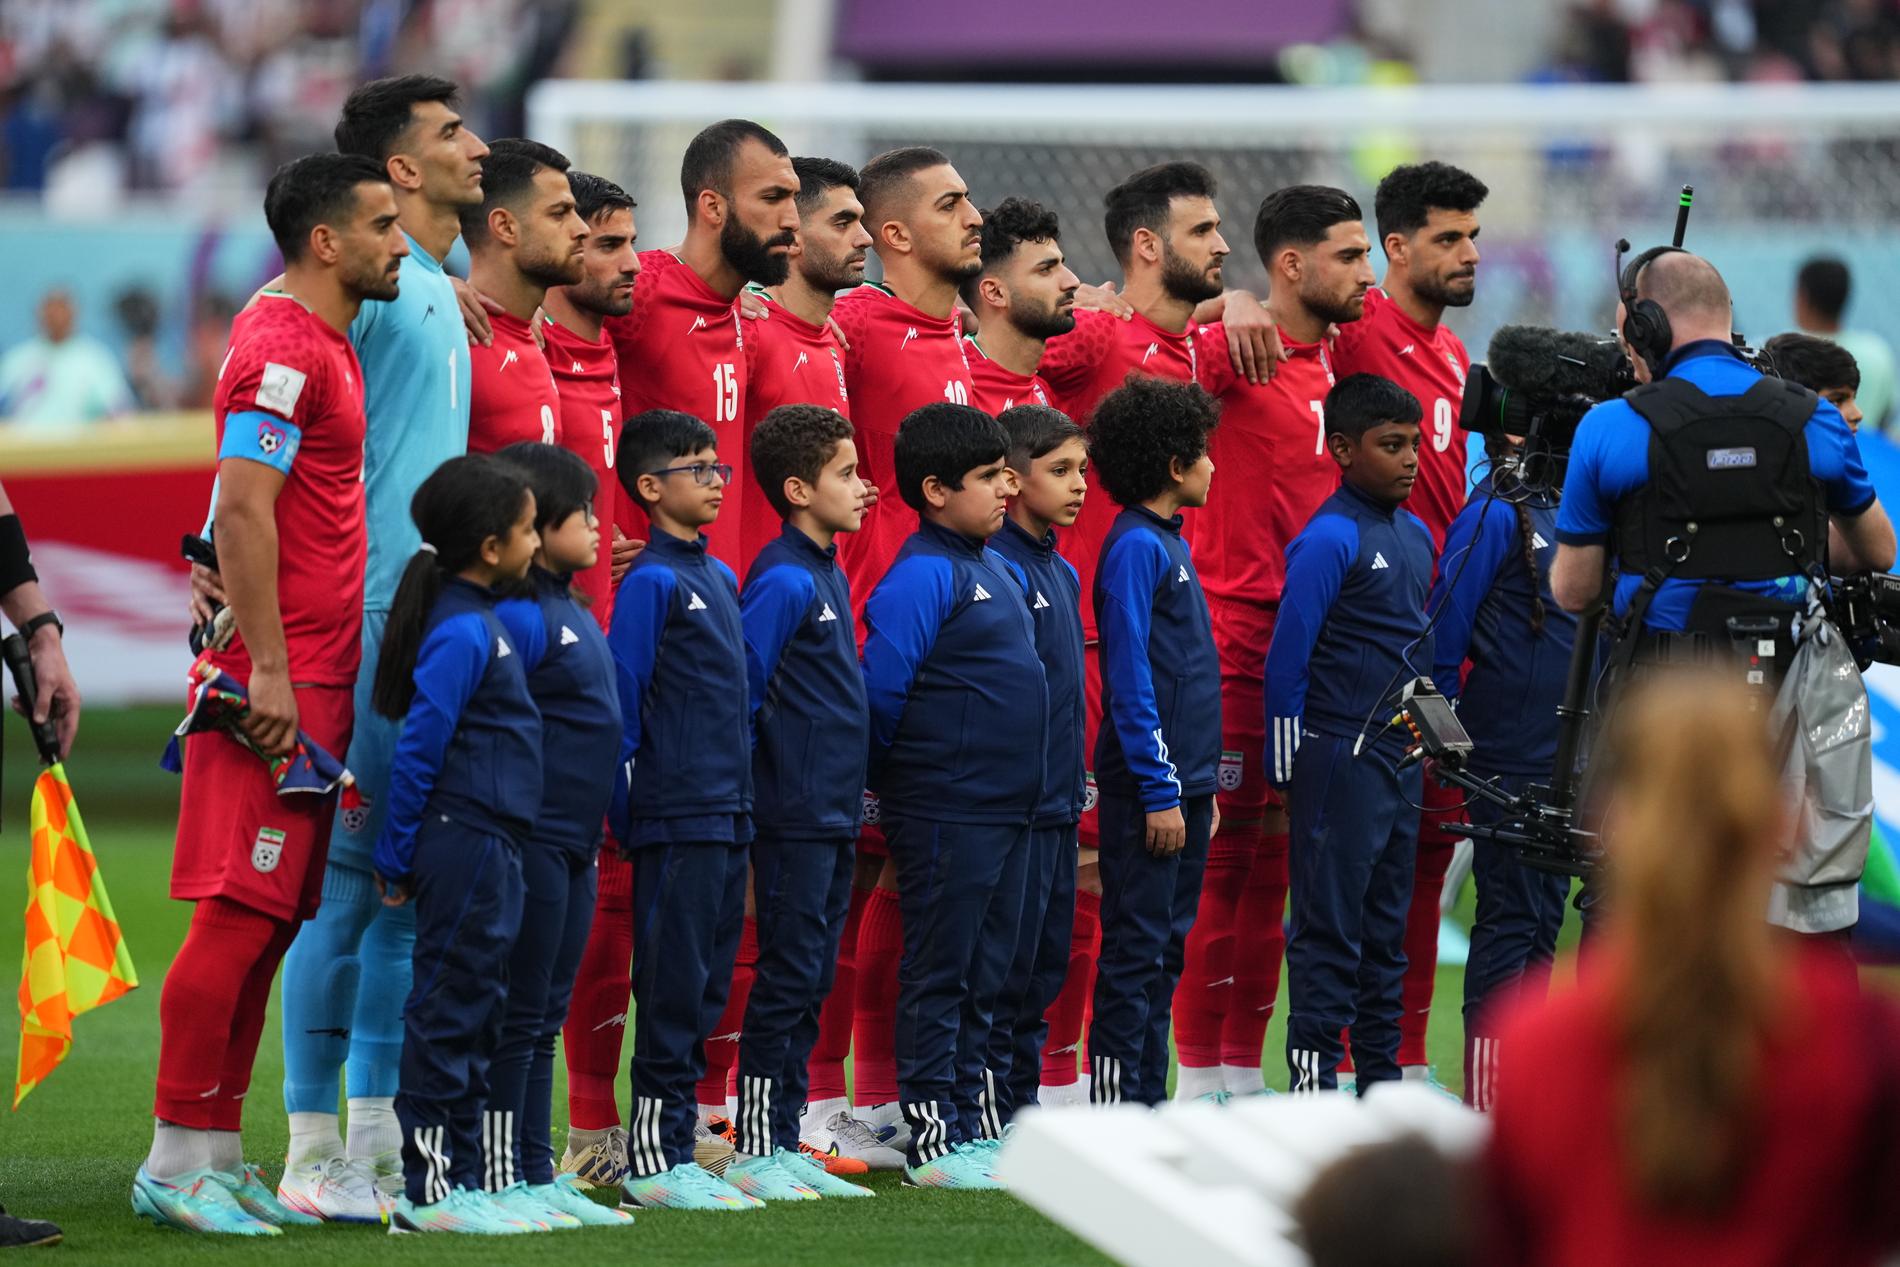 De iranska landslaget vägrade att sjunga nationalsången i öppningsmatchen mot England i fotbolls-VM.